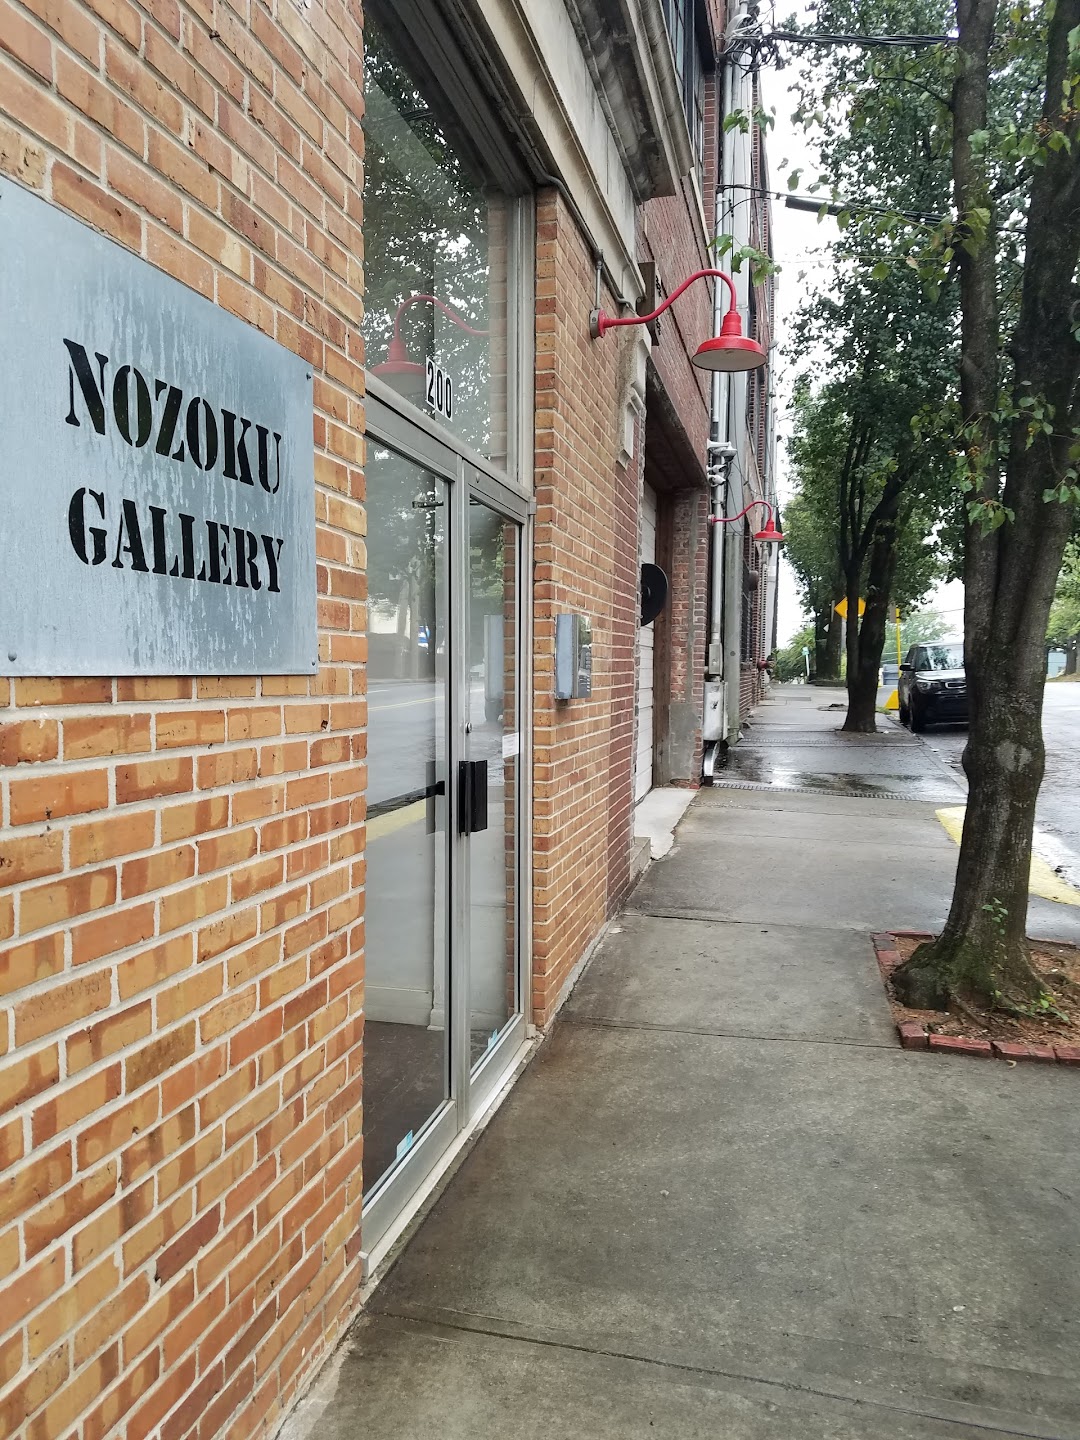 Nozoku Gallery